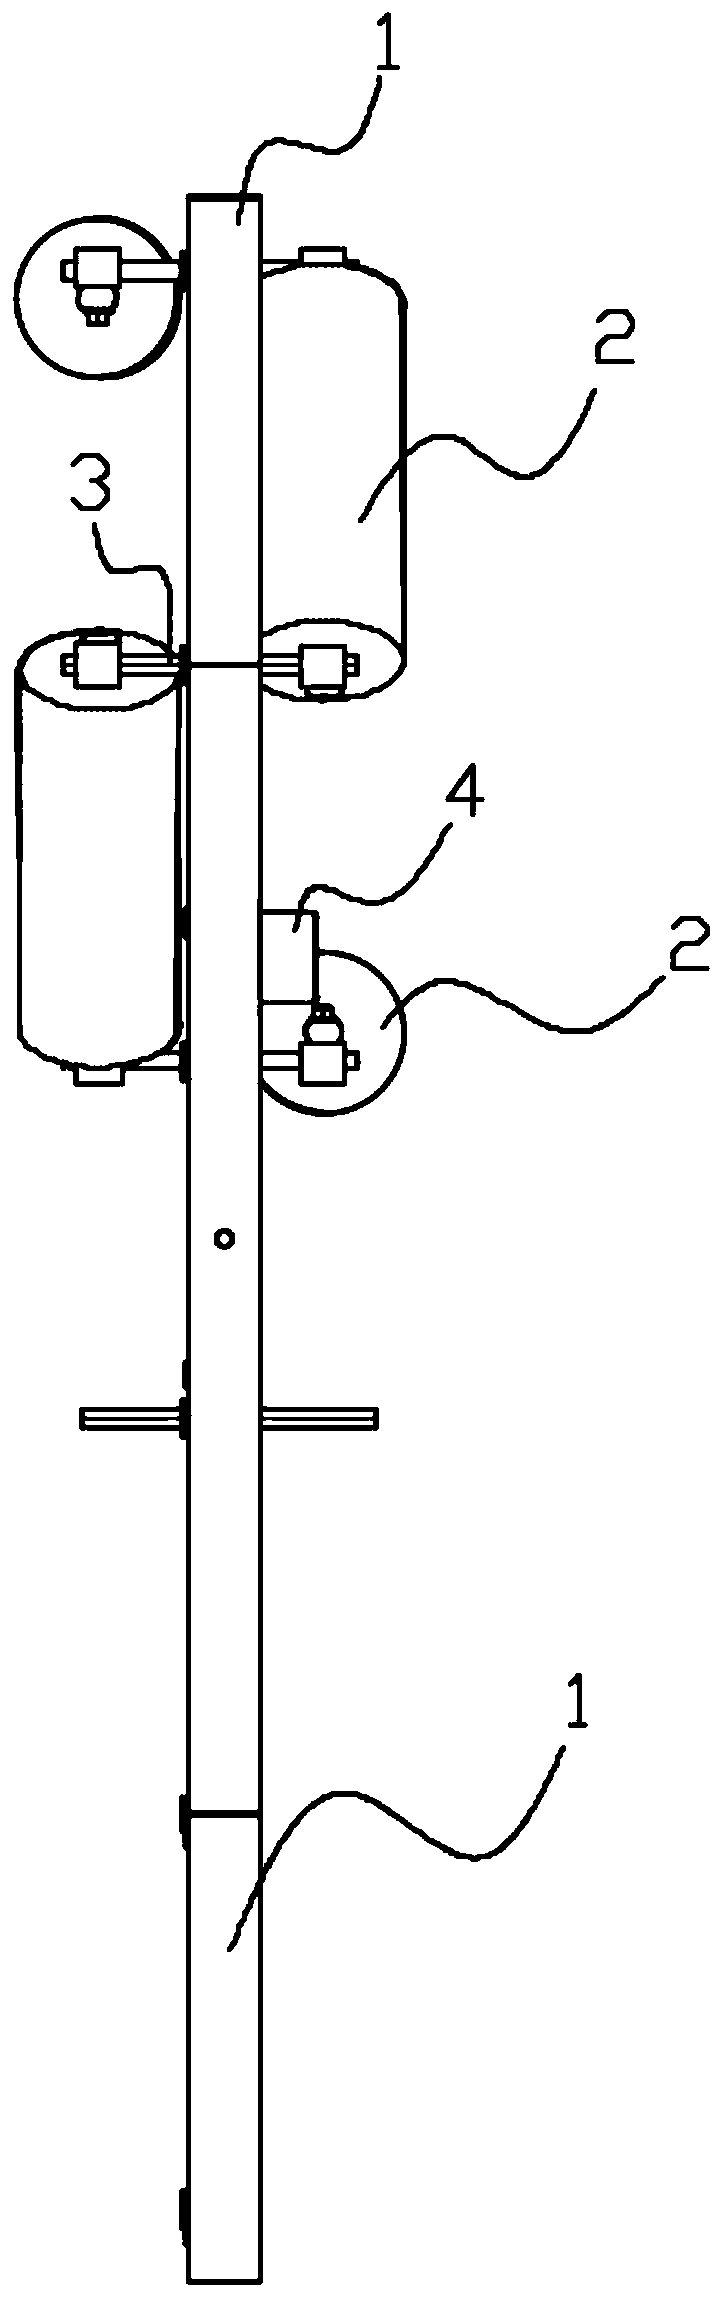 Deviation rectifying device of tubular belt conveyor